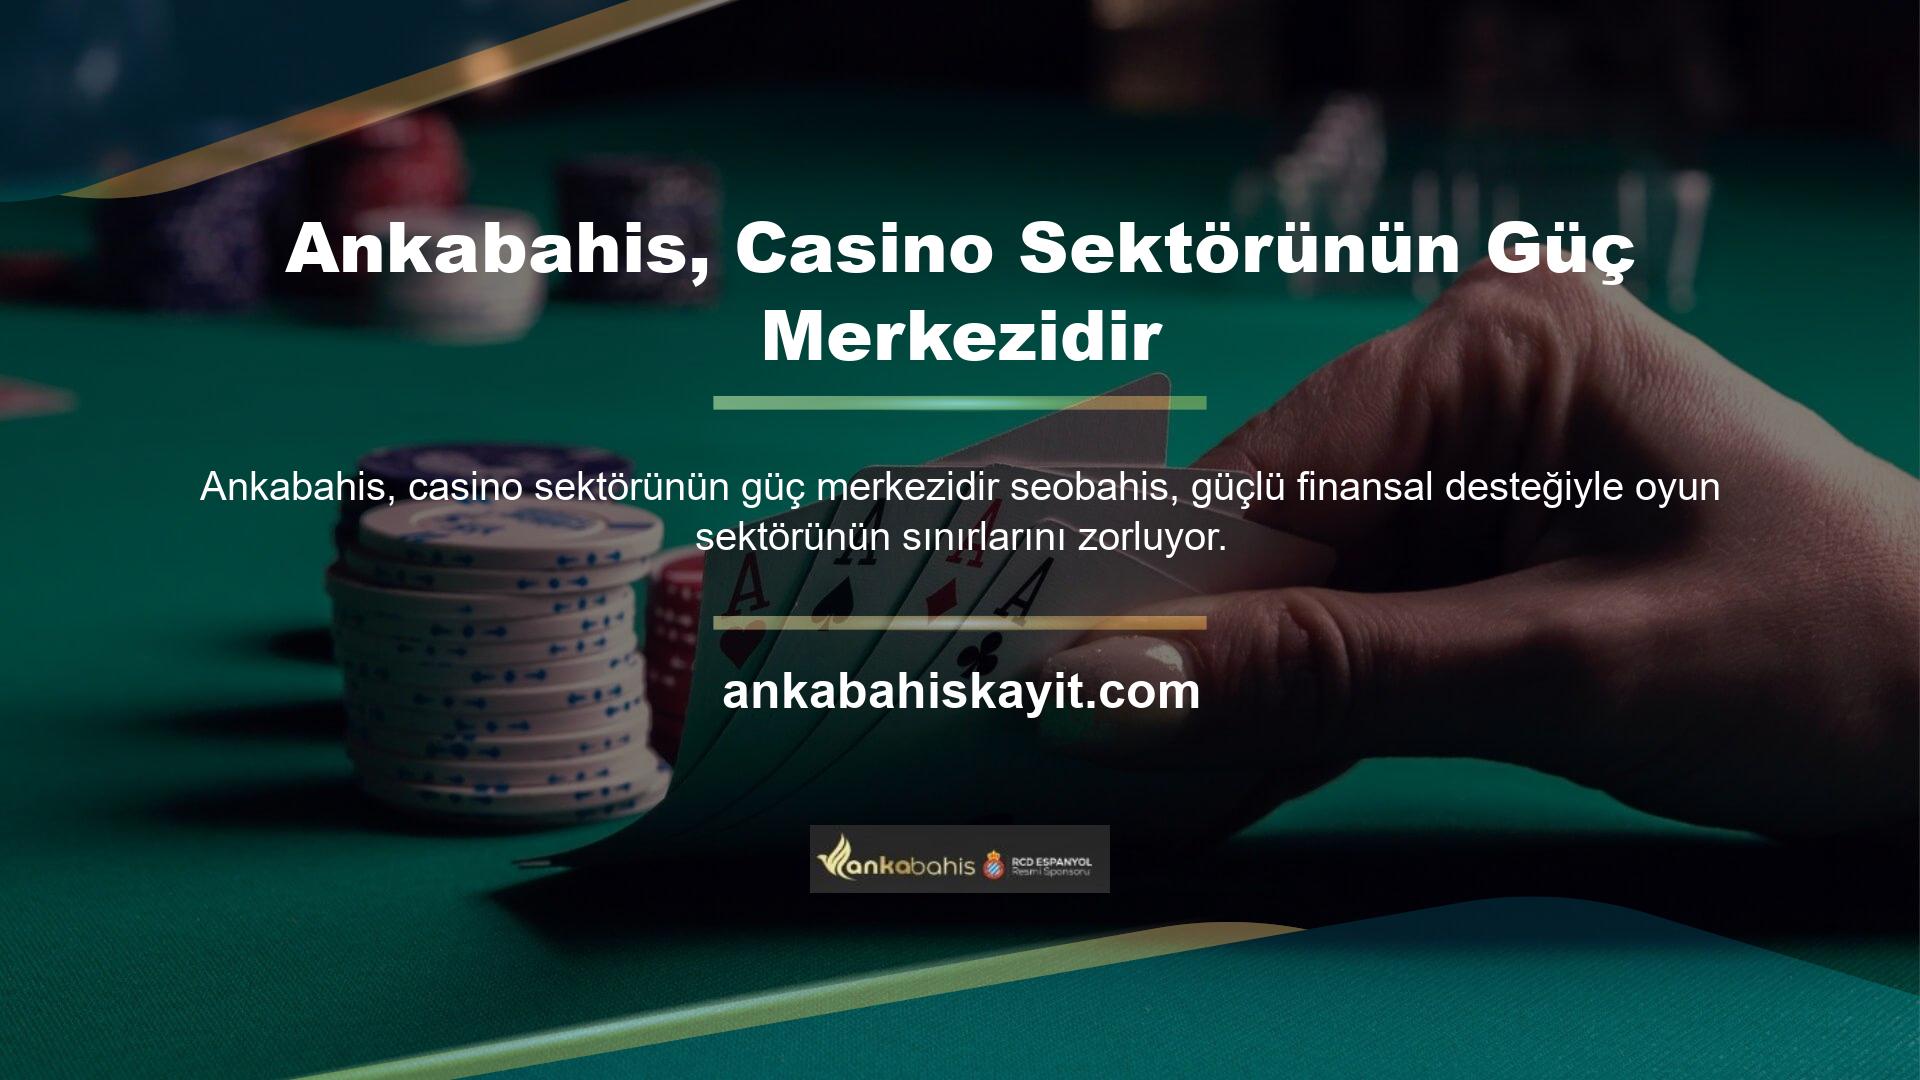 Ankabahis Yönetim Kurulu, yasal ve lisanslı bir casino sitesi olmasını sağlayacağını ve güvenilir ve uygun maliyetli bir yatırım olmaya devam edeceğini söyledi